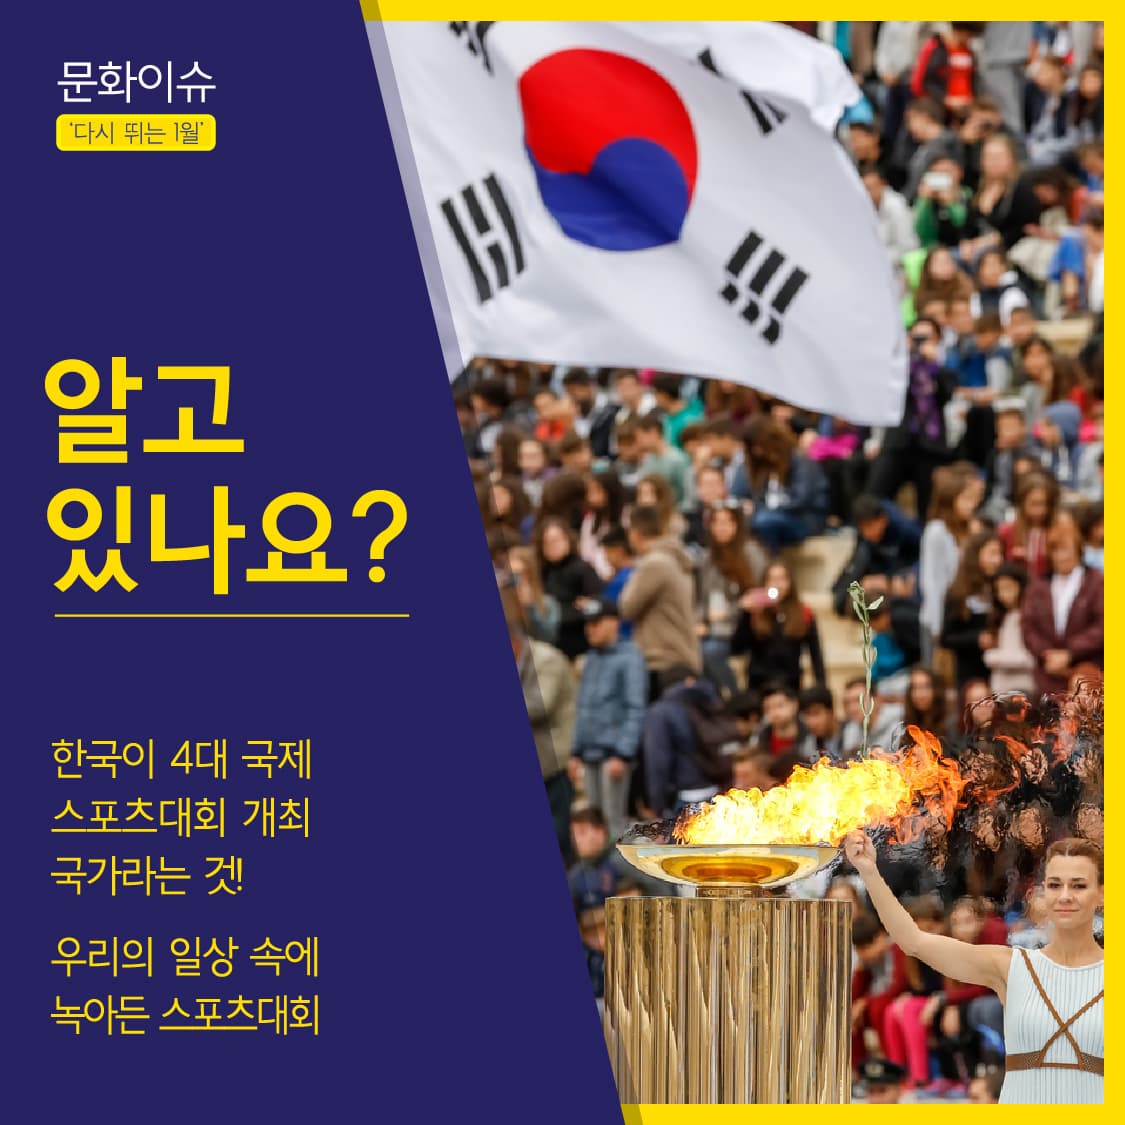 알고 있나요?
한국이 4대 국제 스포츠대회 개최 국가라는 것
우리의 일상 속에 녹아든 스포츠대회